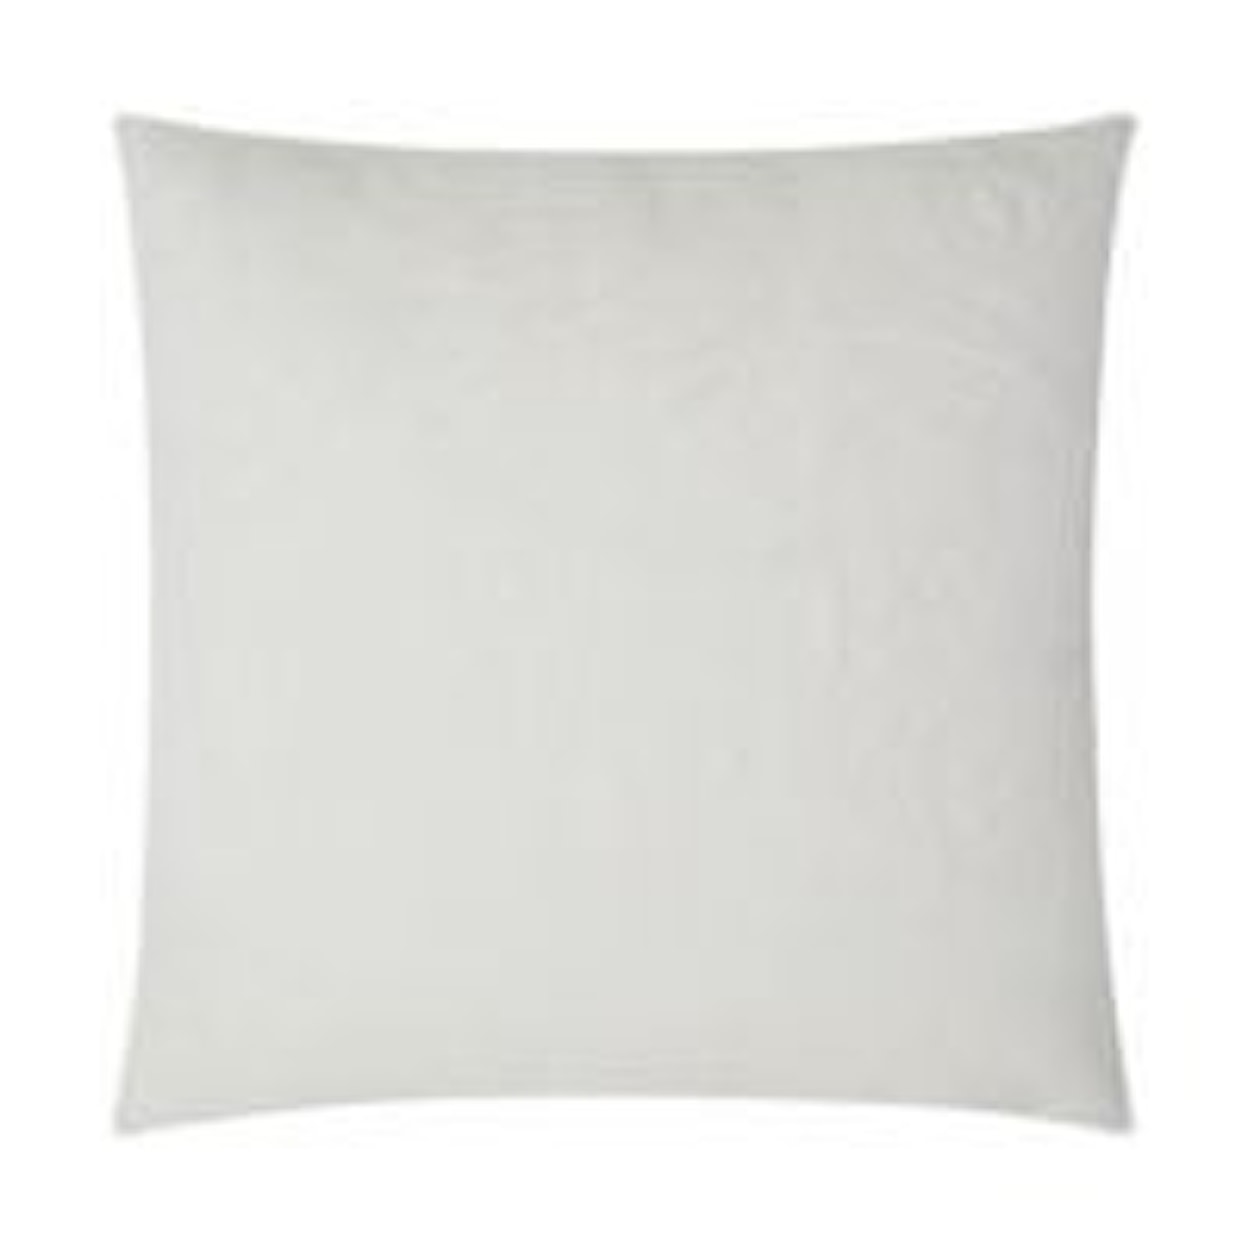 D.V. KAP Home Indoor Pillows FUROCIOUS SWAN 24" PILLOW